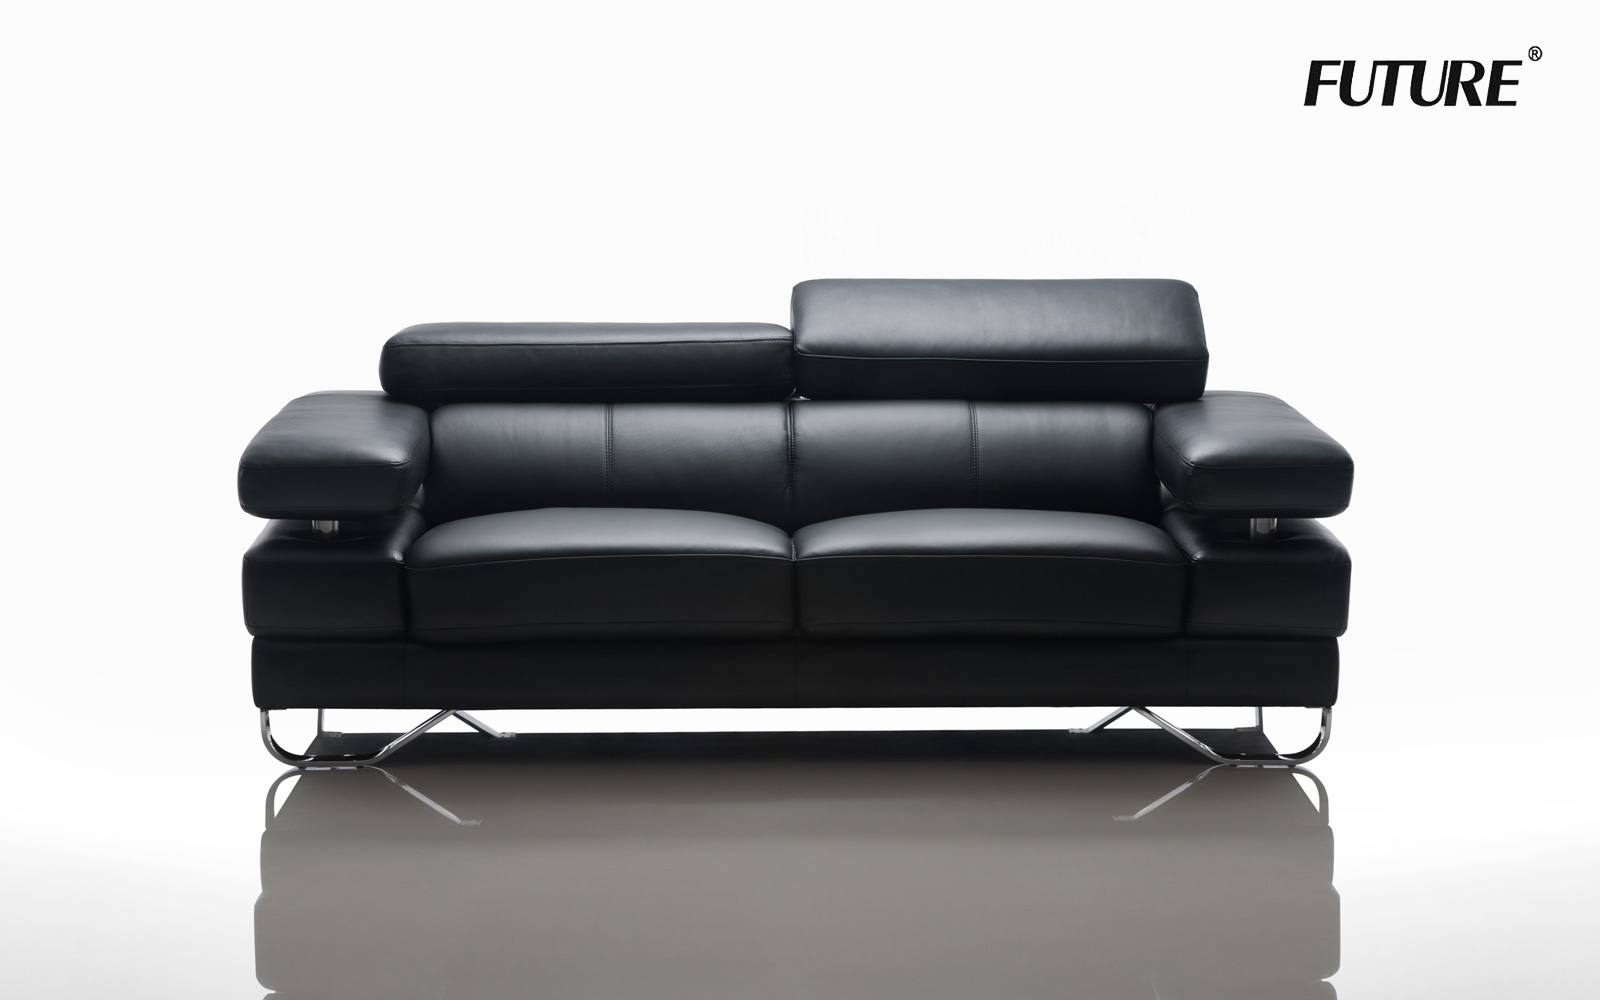 Tuyển tập các mẫu sofa màu đen thiết kế tinh tế và sang trọng nhất - Ảnh 7